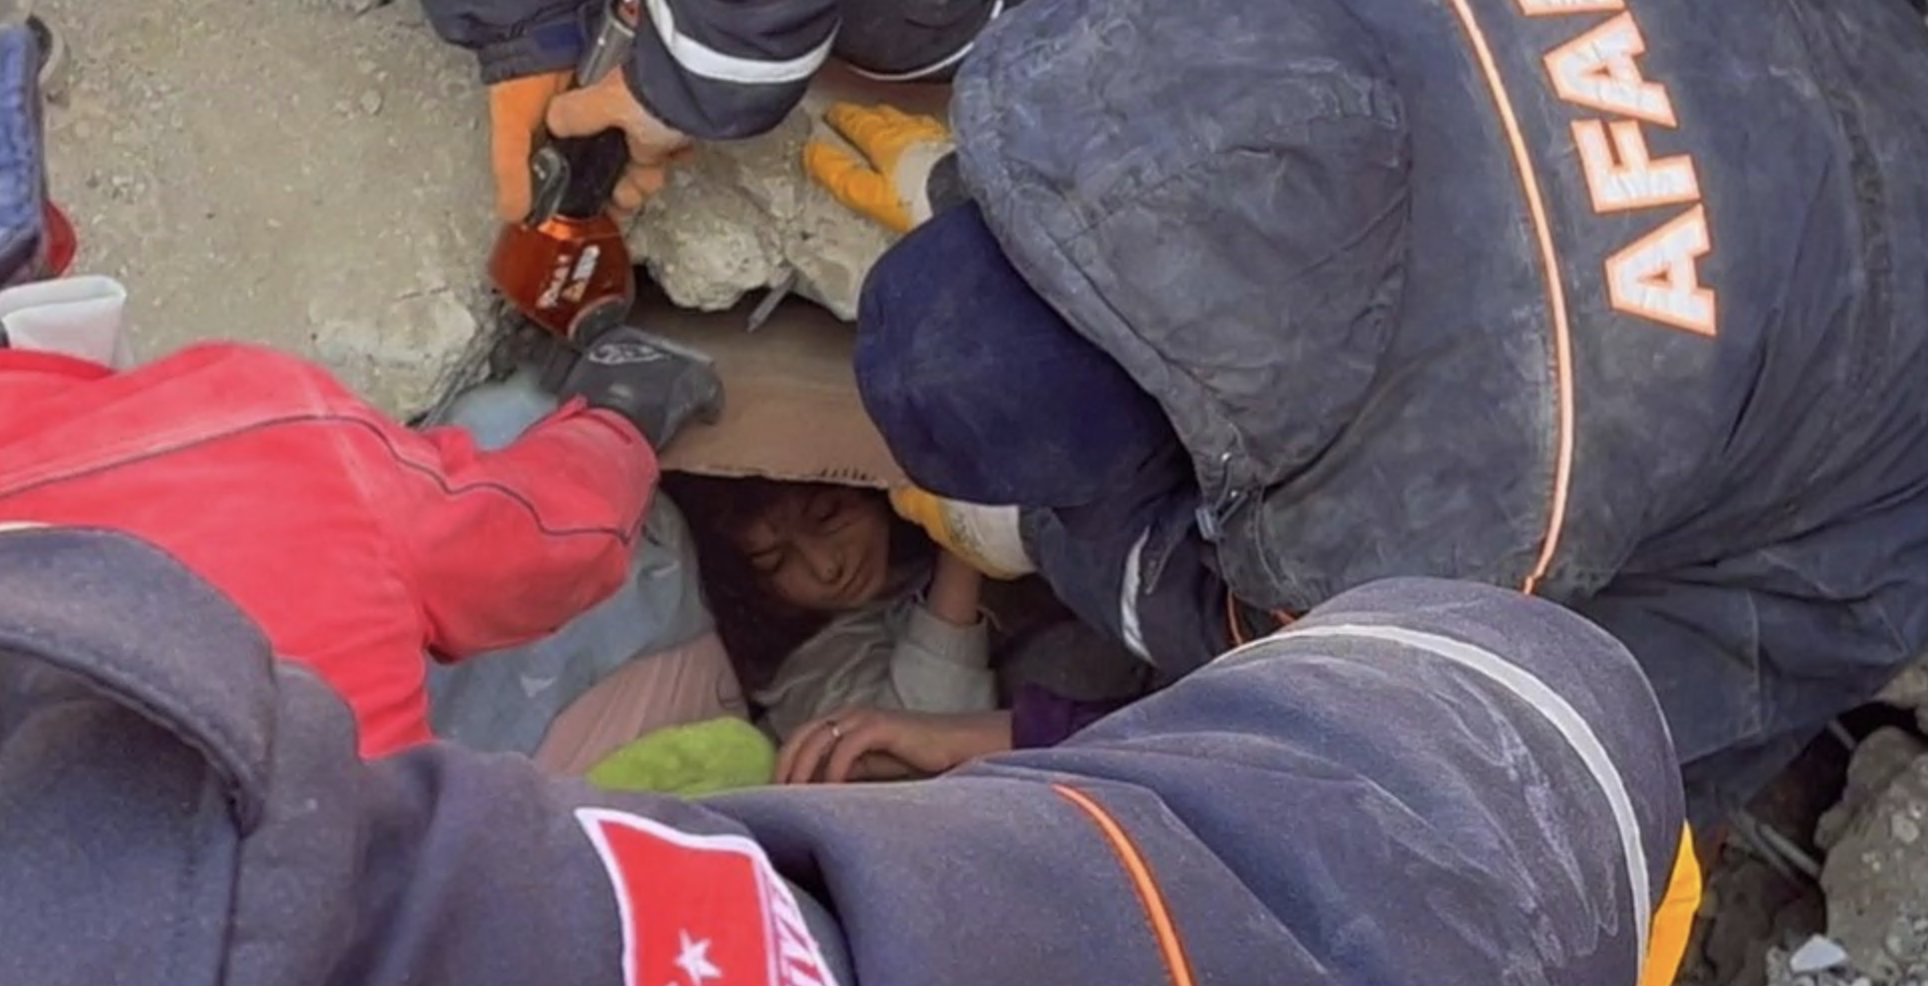 Menina sendo resgatada por socorristas dos escombros de um prédio desabado